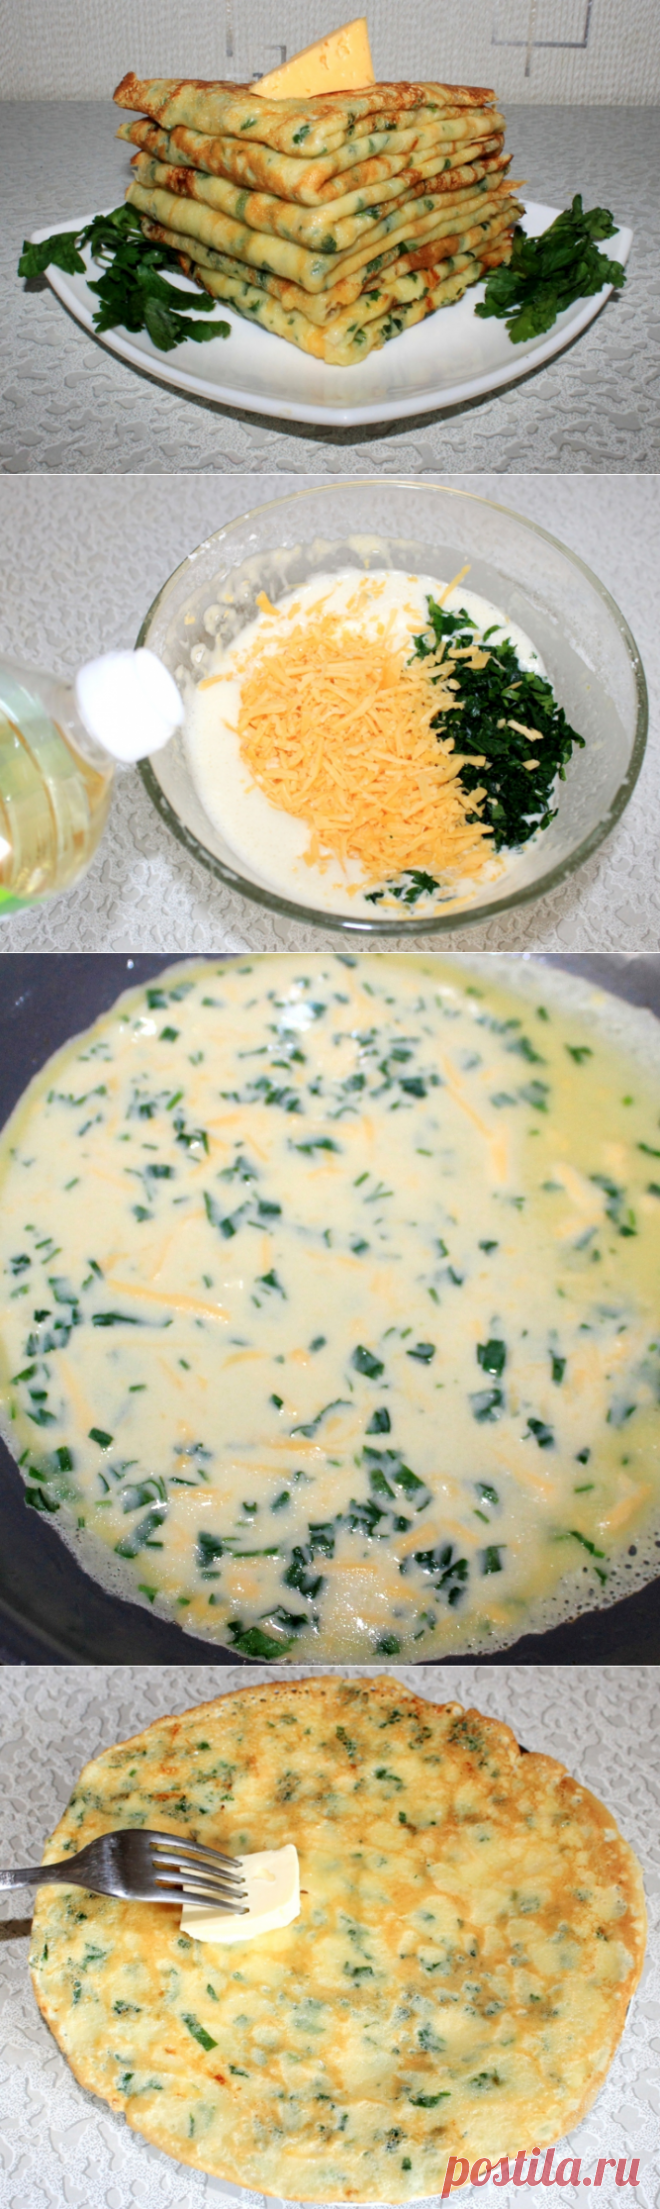 Сырные блинчики с петрушкой - рецепт - как приготовить - ингредиенты, состав, время приготовления